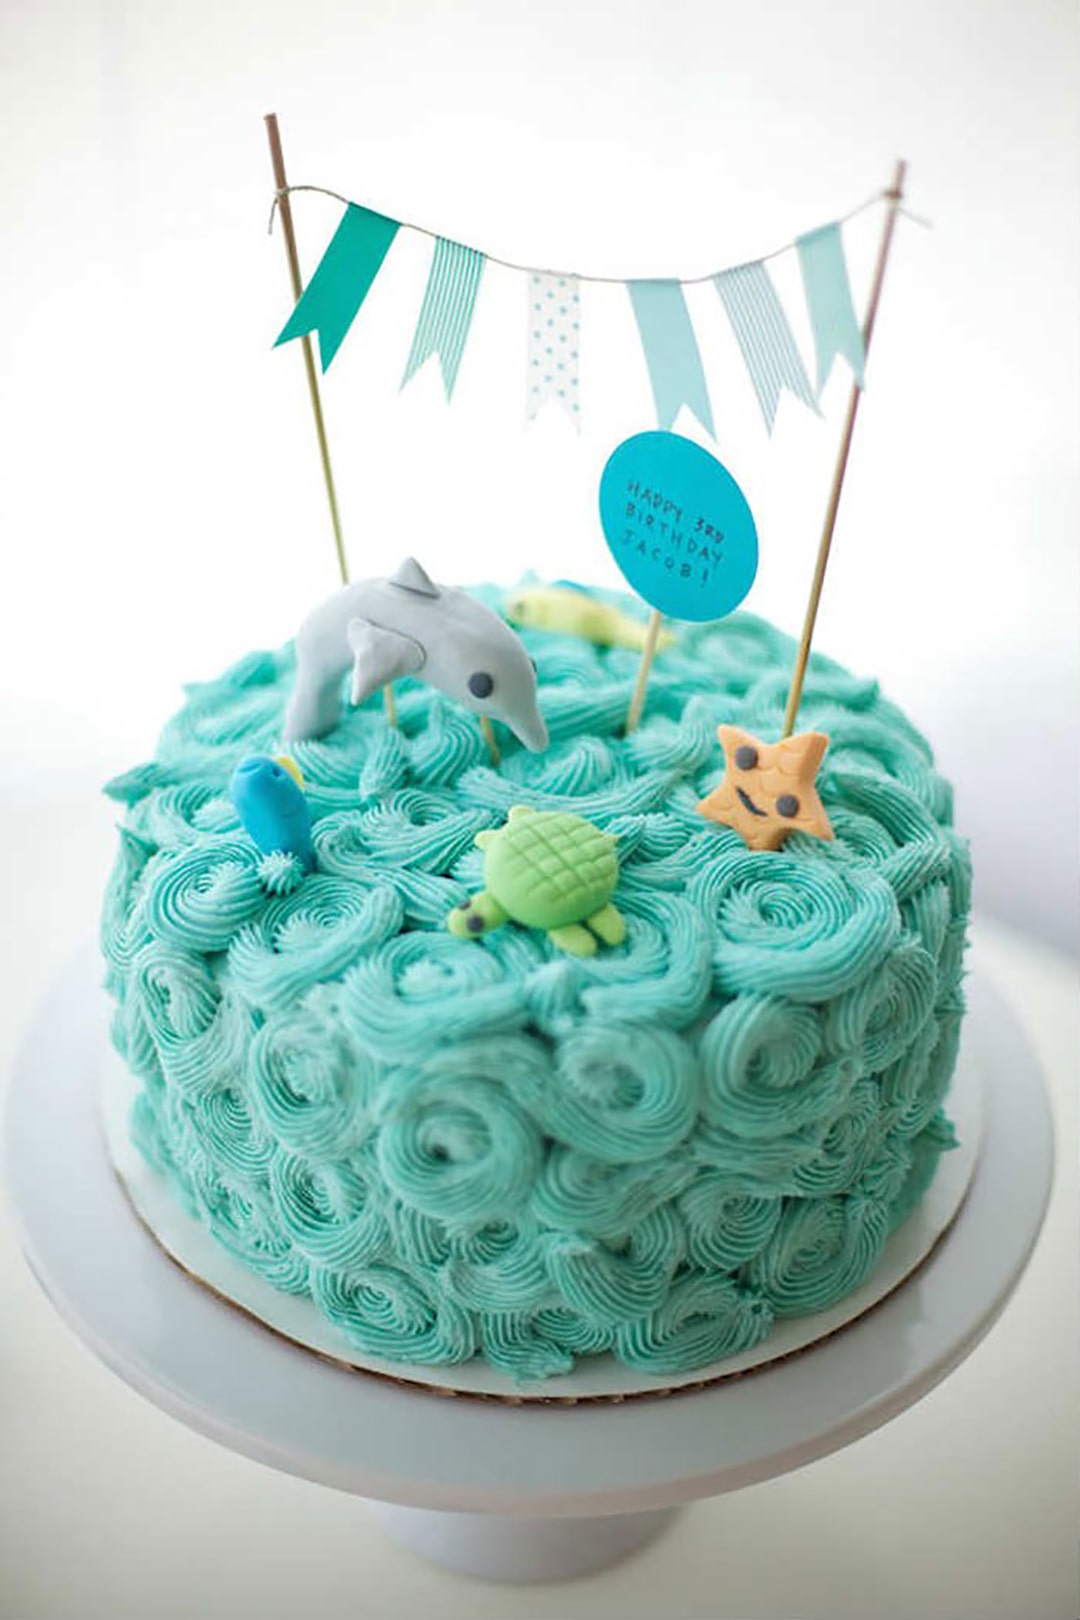 Hình ảnh 15 chiếc bánh gato, bánh sinh nhật màu xanh dương đẹp không tỳ vết